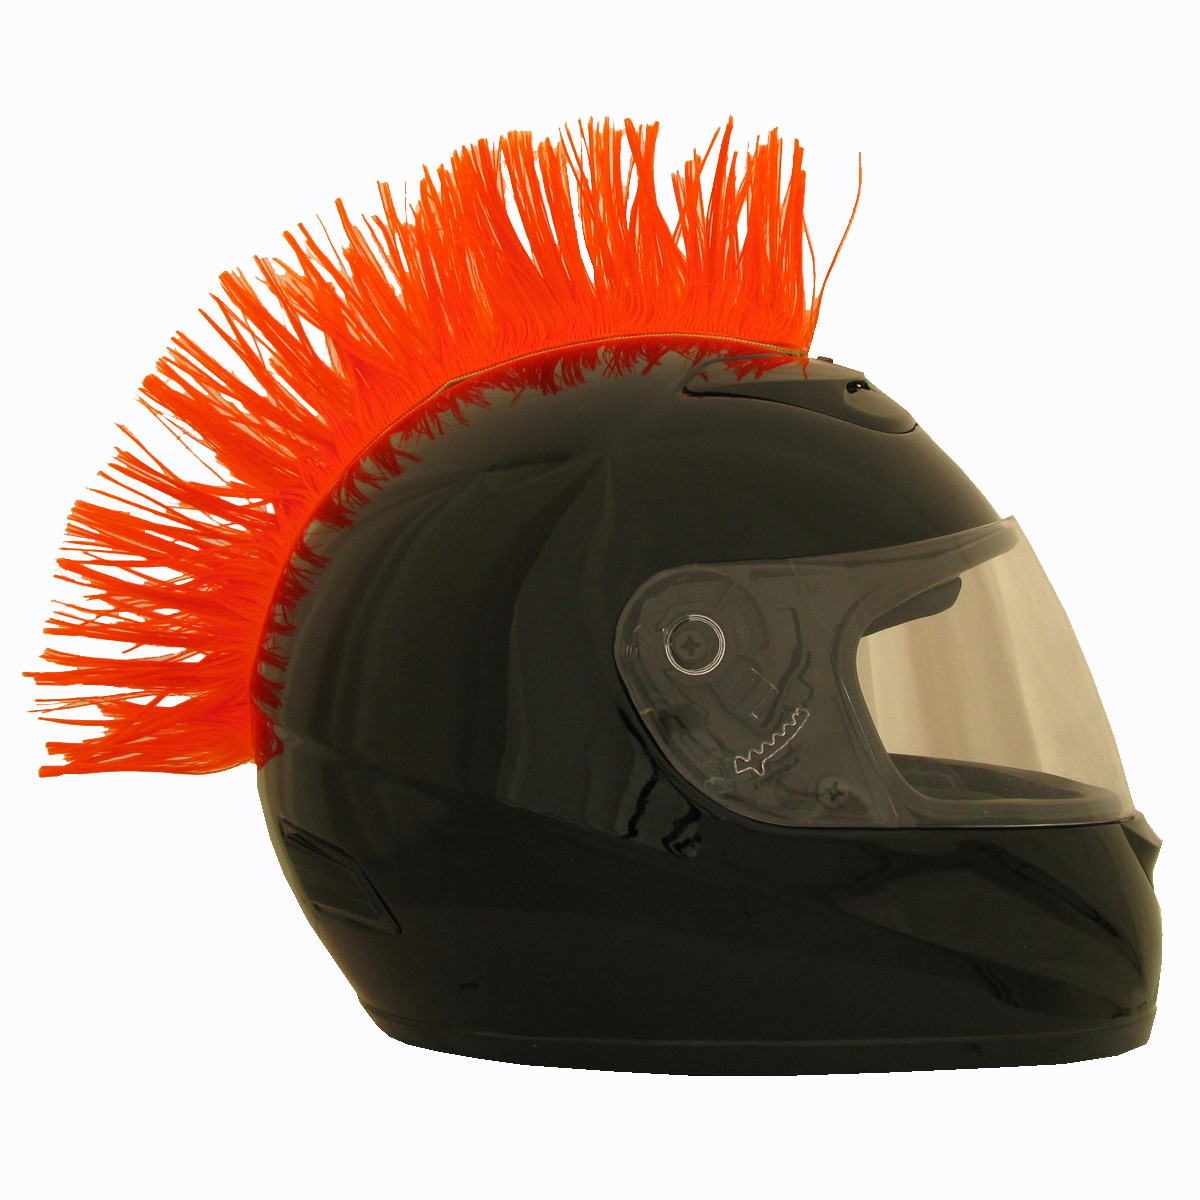 Orange_Motorcycle_Helmet_Mohawk__33418.1407818291.1280.1280.jpg